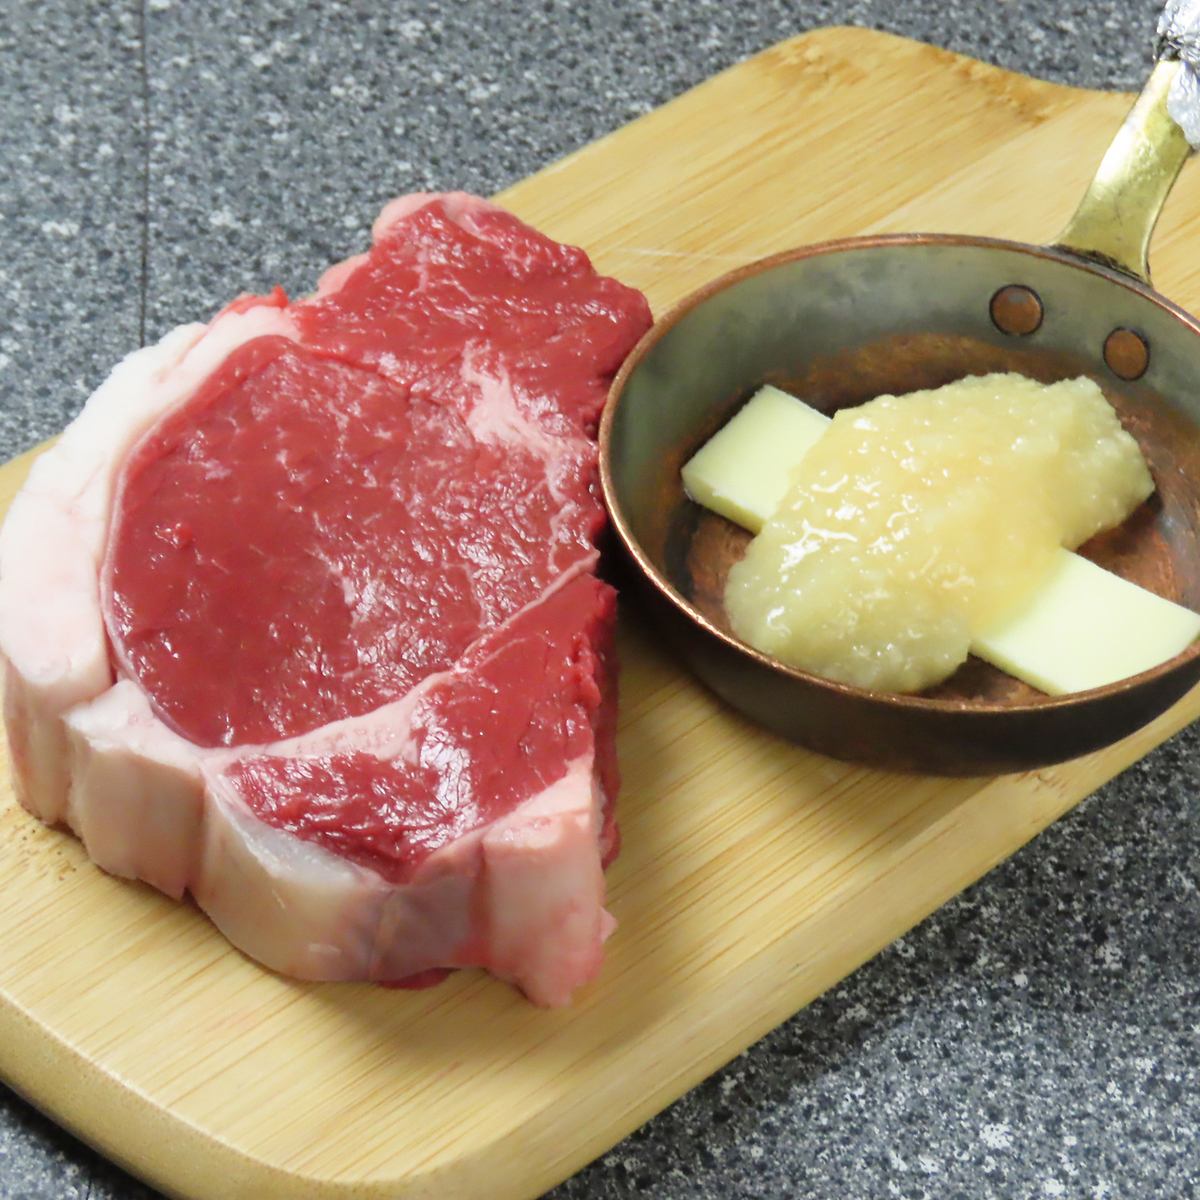 菲力牛排、烤肋排等優質肉類搭配旭川產酒。